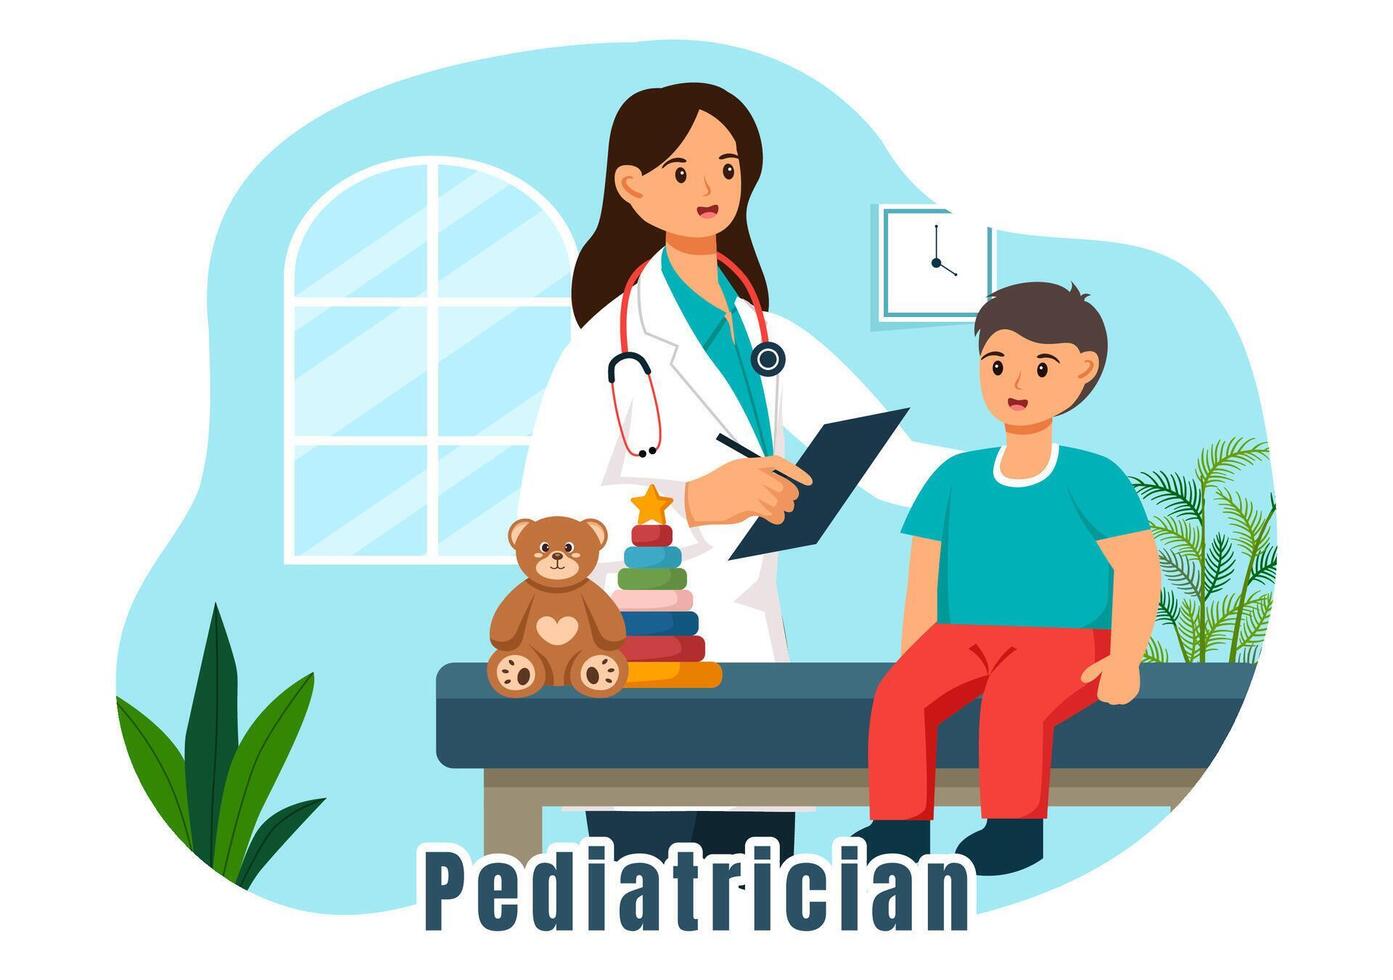 Kinderarzt Illustration mit untersucht krank Kinder zum medizinisch Entwicklung, Impfung und Behandlung im eben Karikatur Hintergrund Design vektor